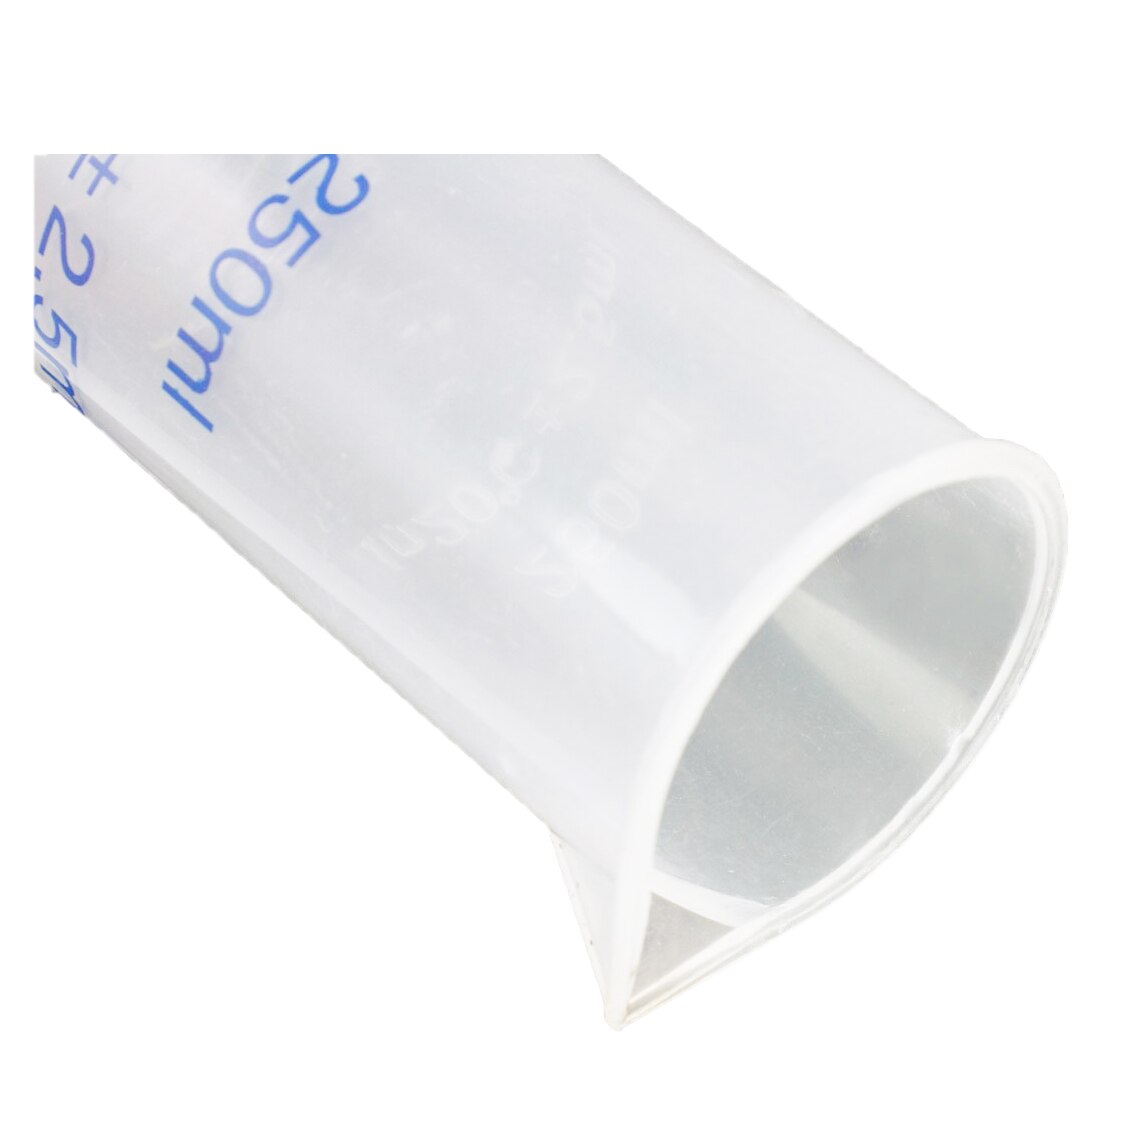 Cilinder Hoogte 31.5 Cm Cup Plastic, 250 Ml Vloeibare Meting